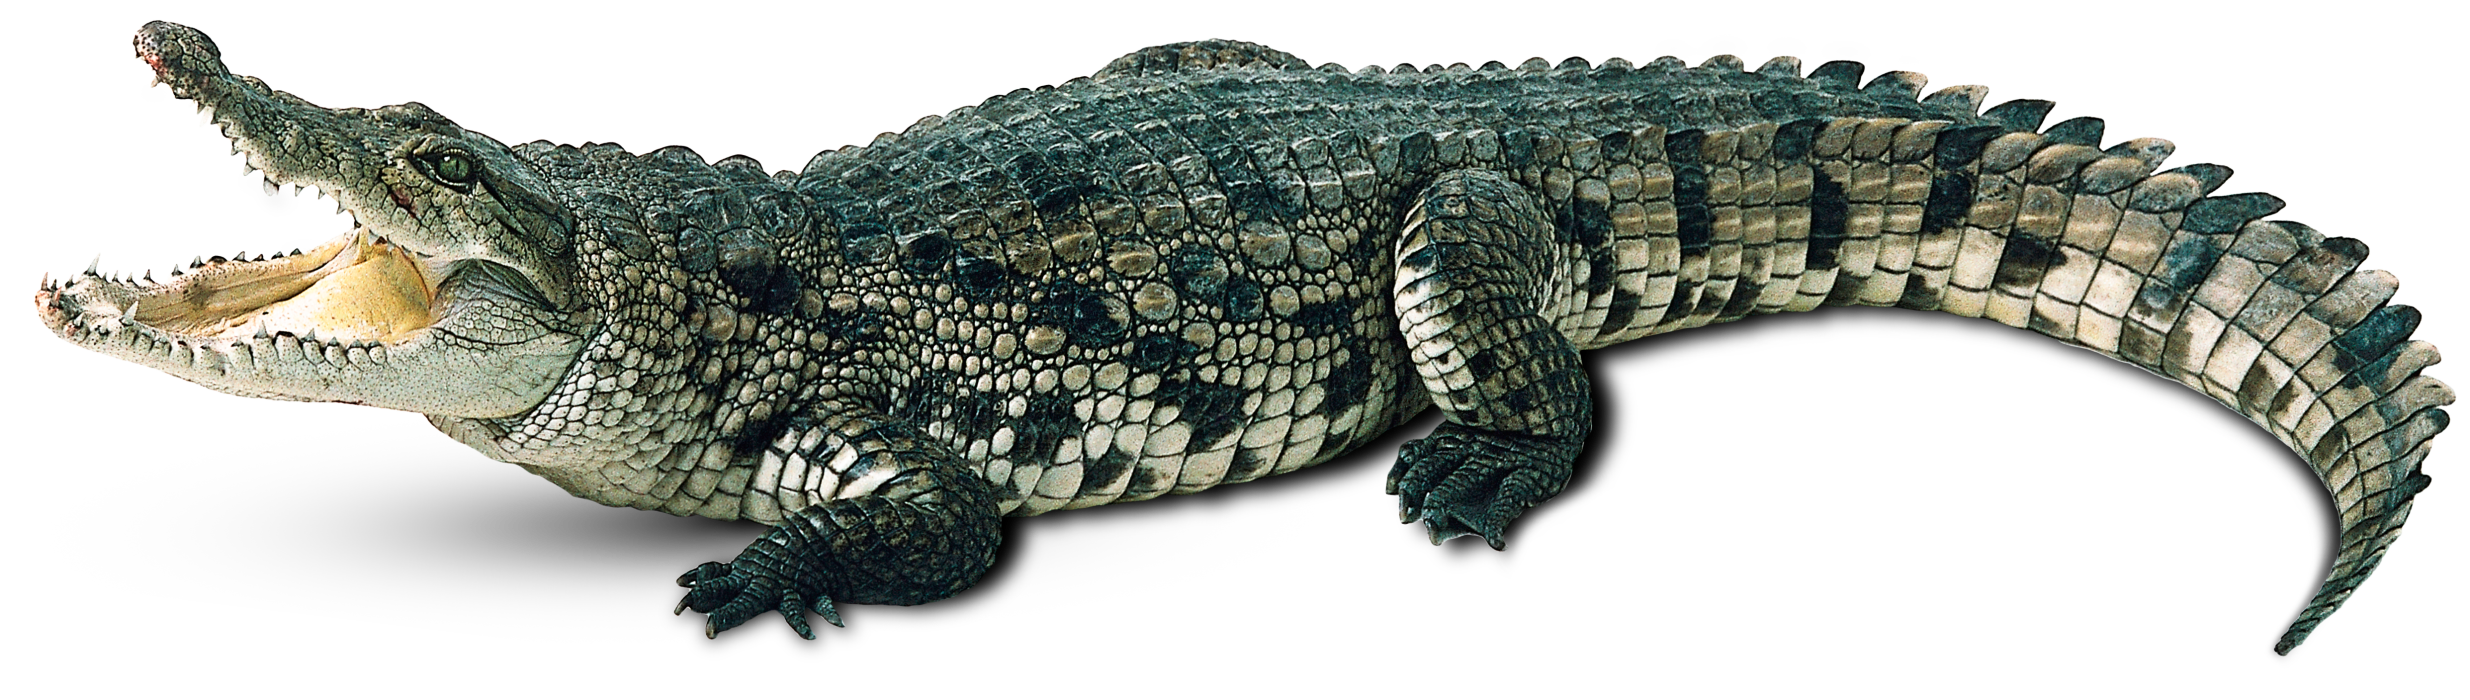 Alligator Background PNG